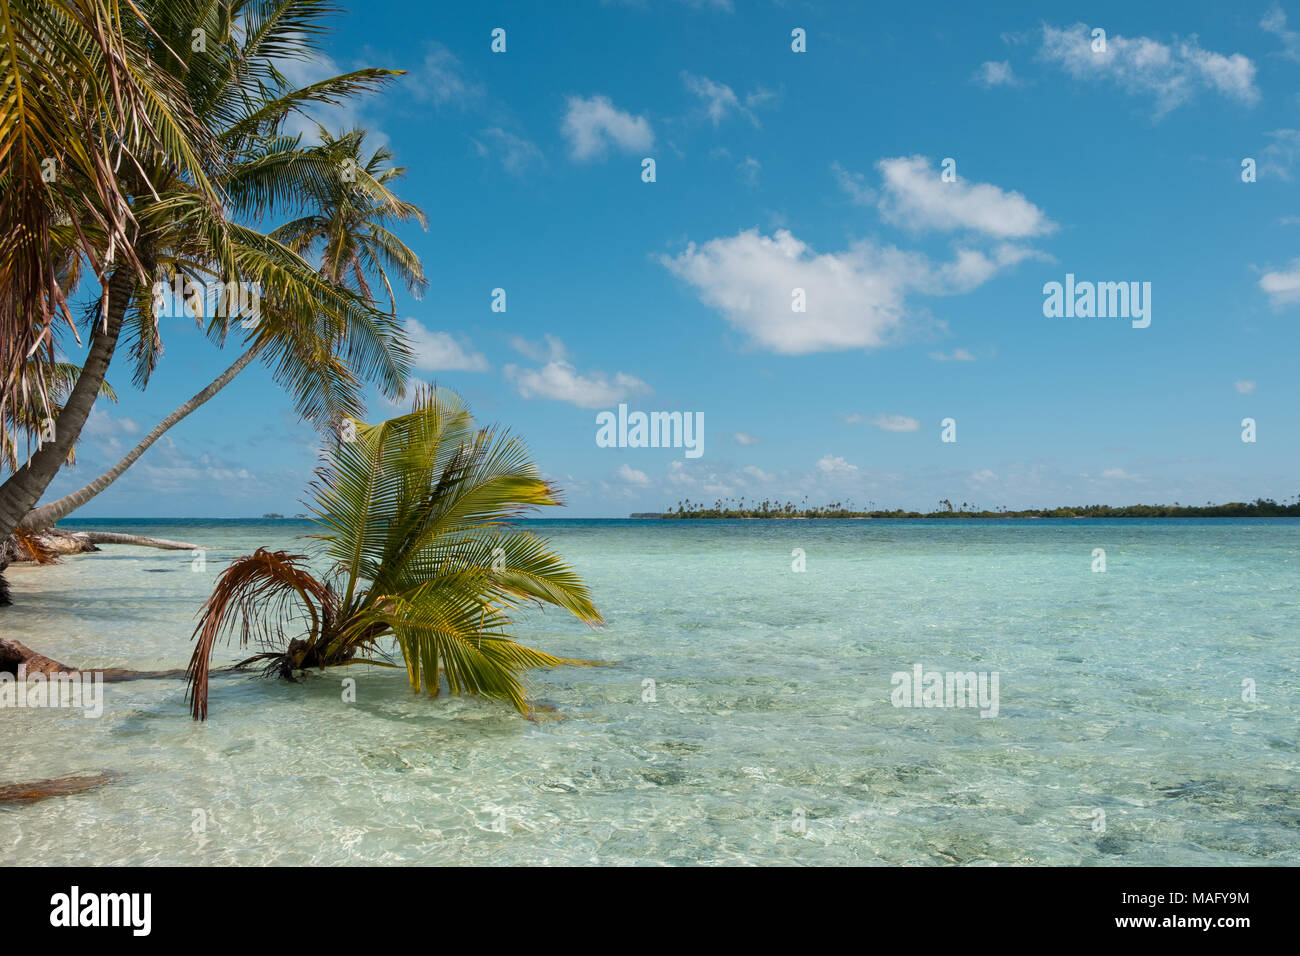 Palmen am Strand mit kristallklarem Meer Wasser - Stockfoto